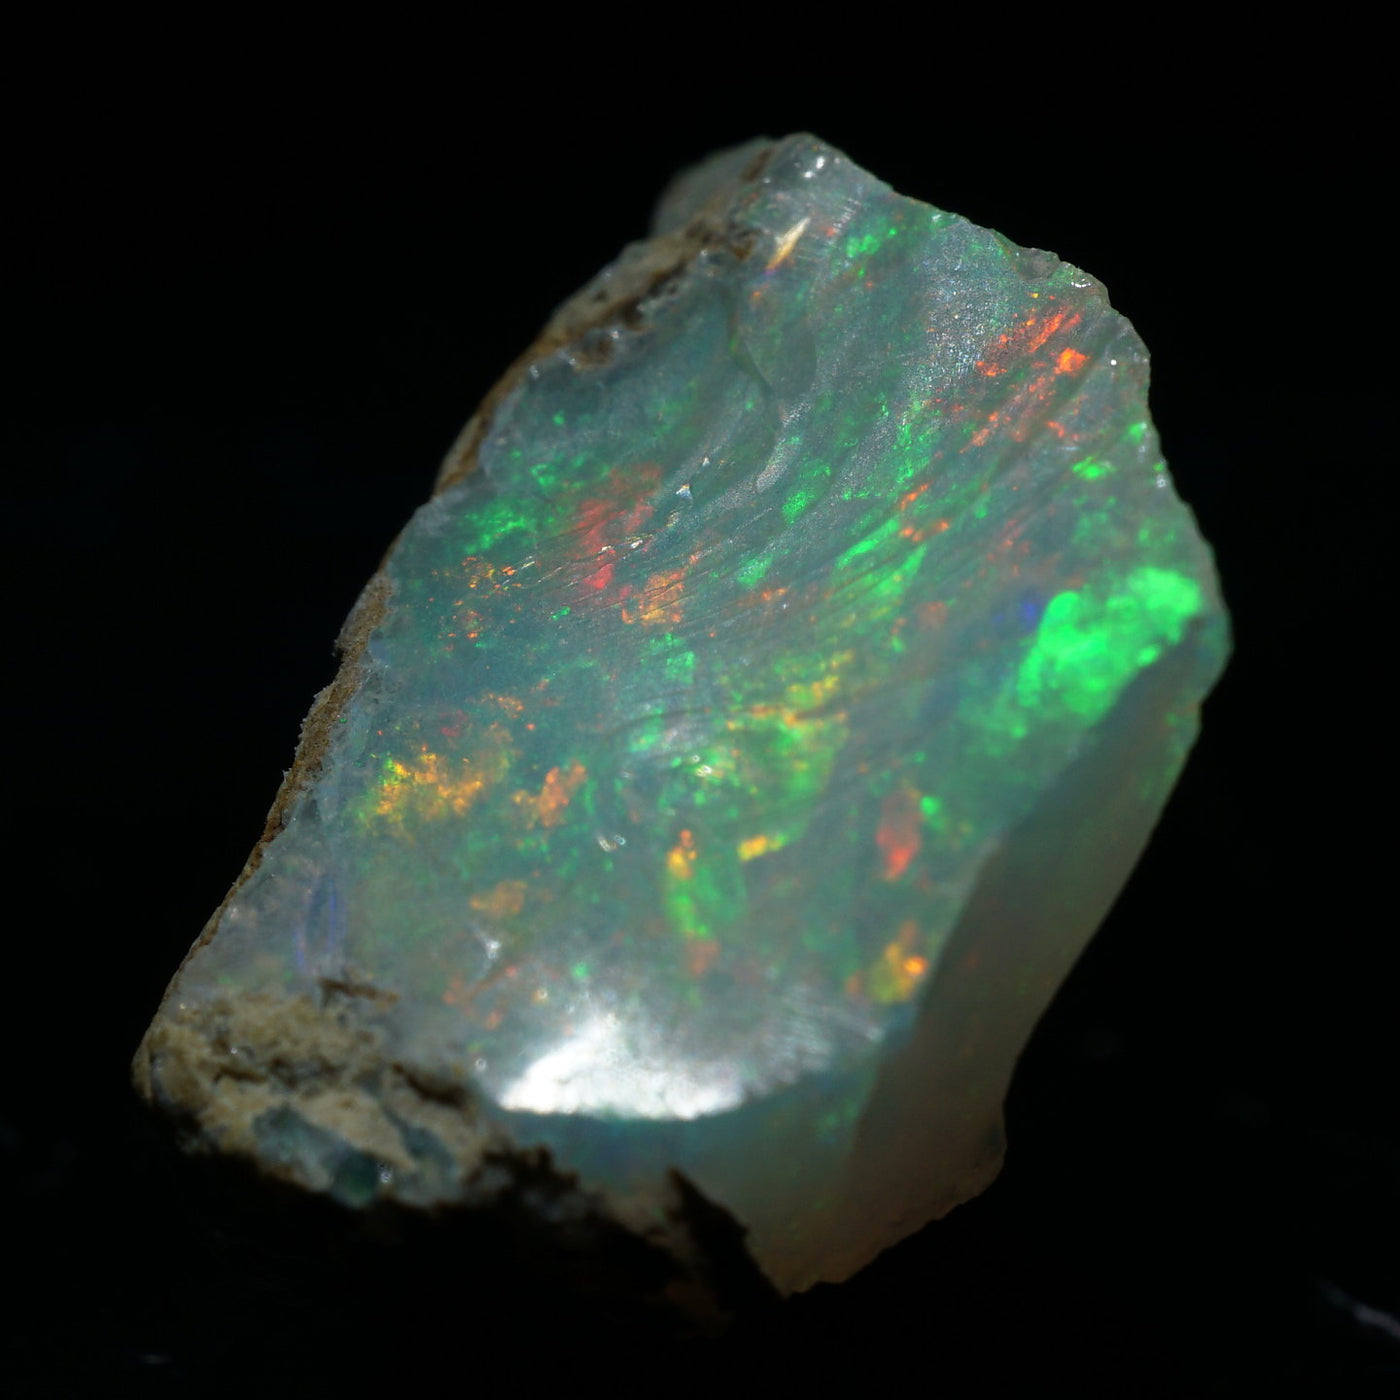 エチオピア産 オパール – 天然石ハッピーギフト